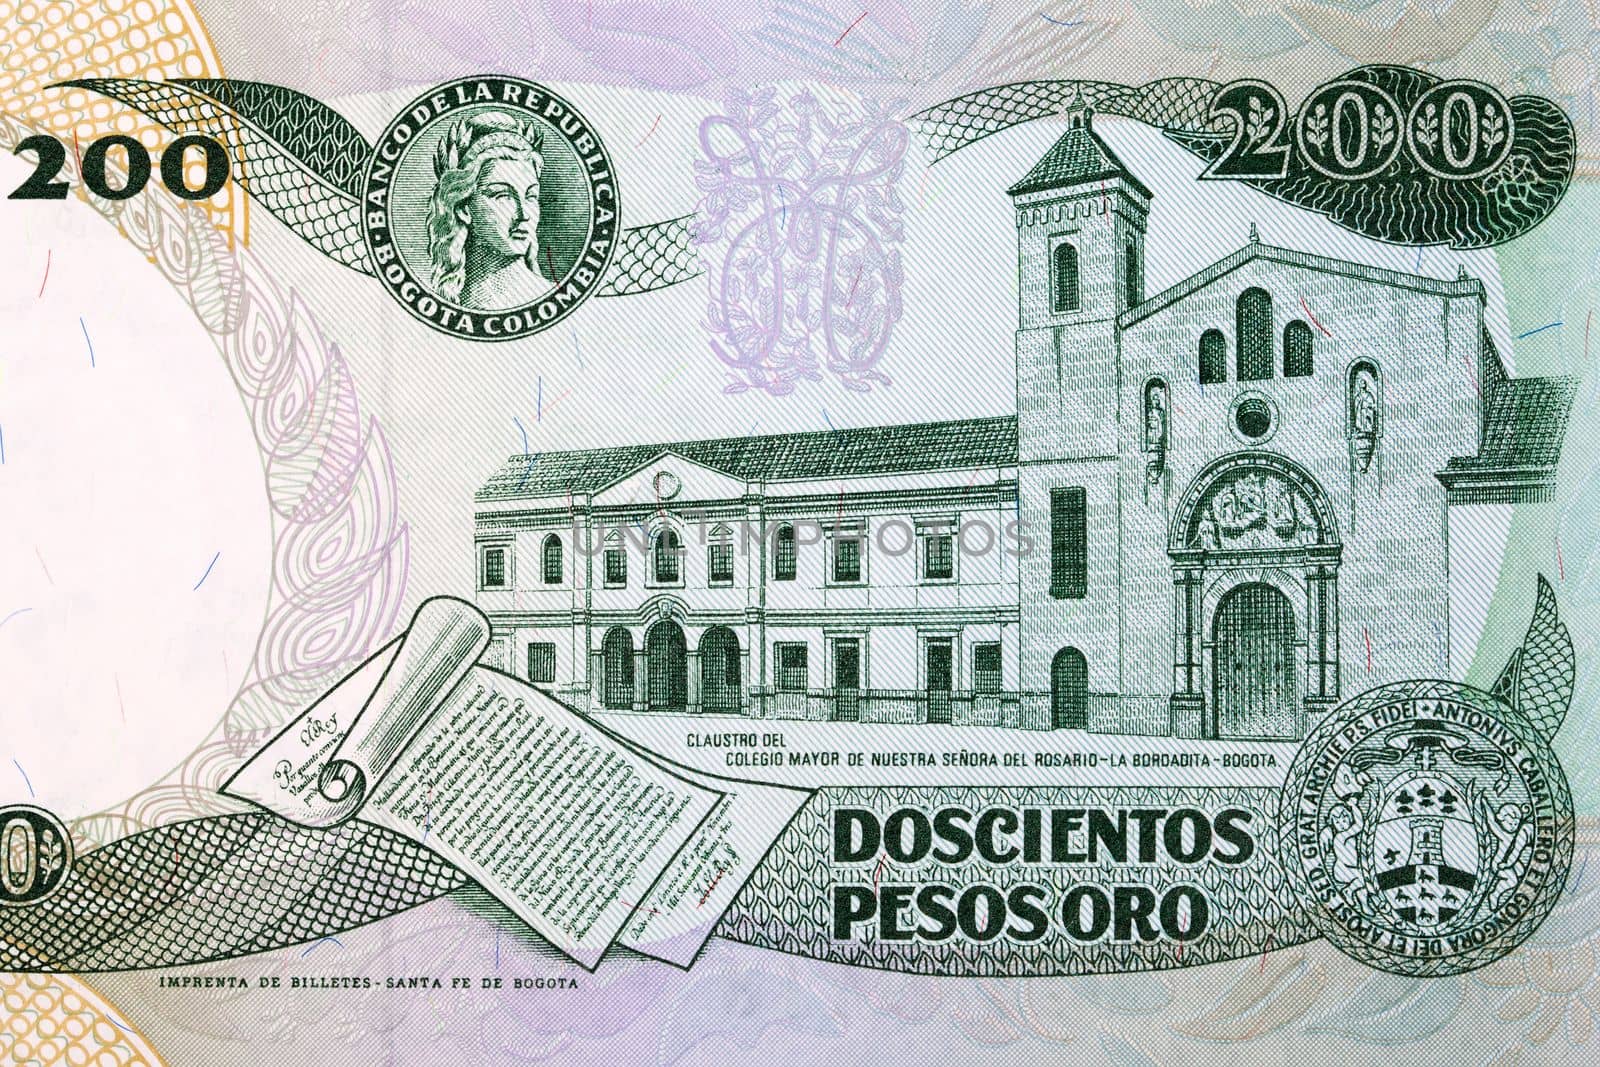 Monastery of the Colegio Mayor de Nuestra Senora del Rosario in Bogota by johan10